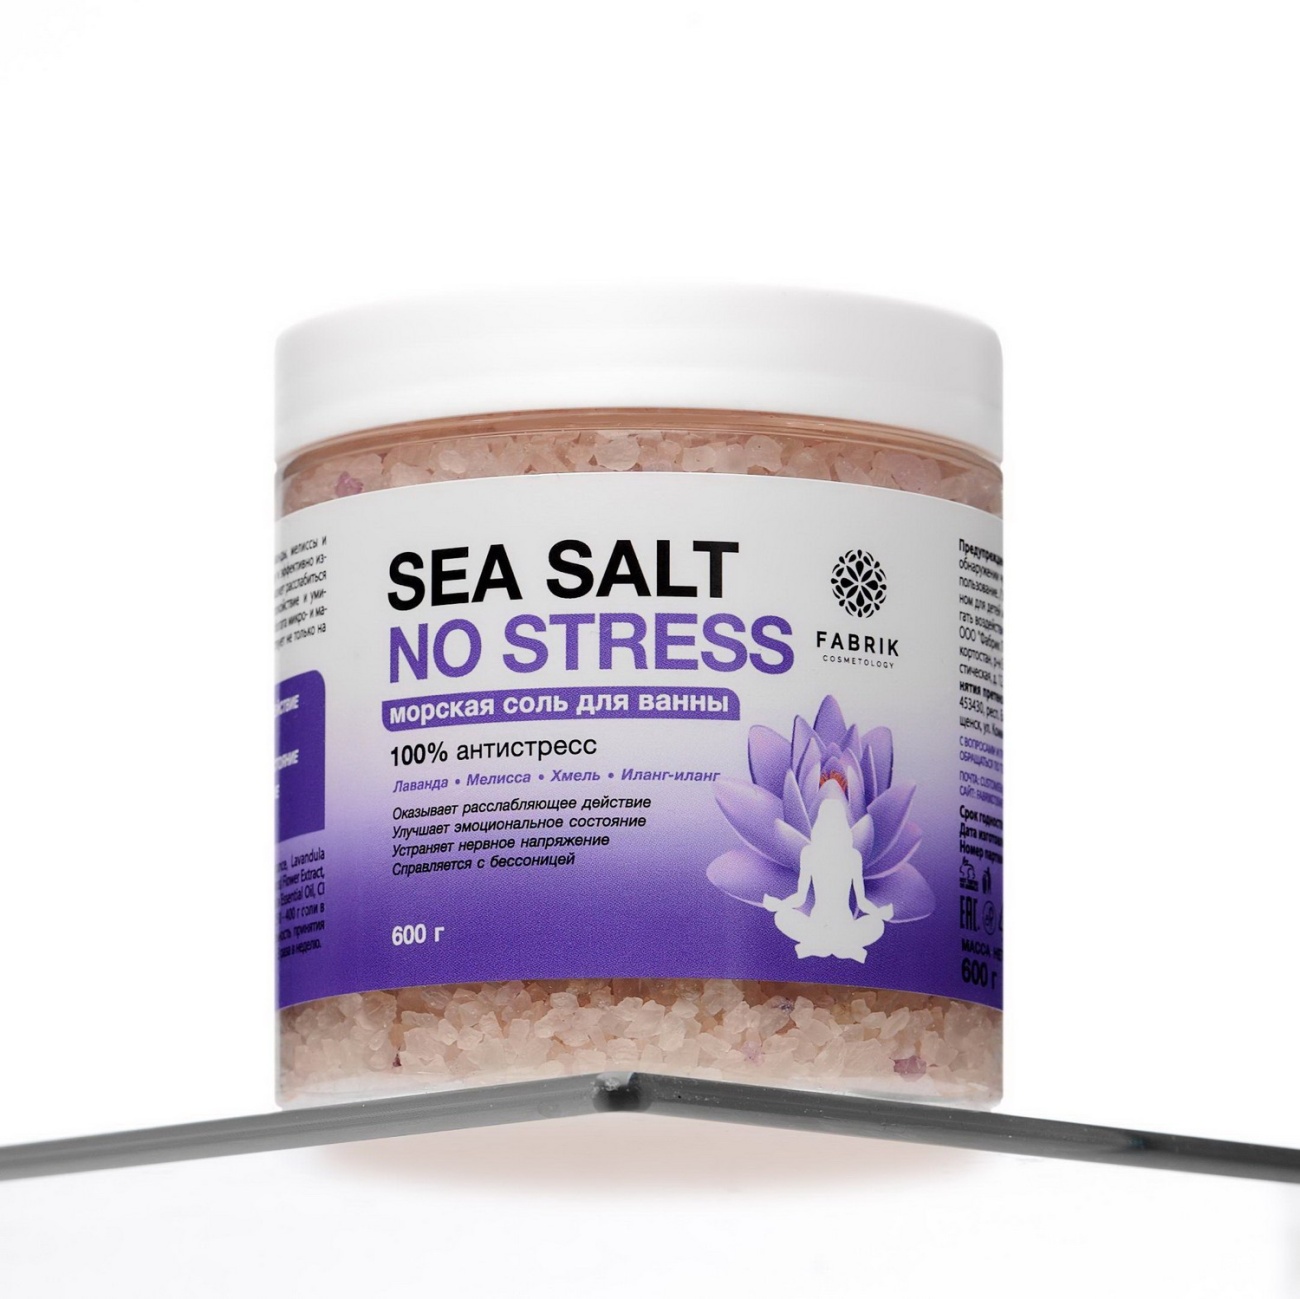 Соль для ванны Fabrik Cosmetology SEA SALT NO STRESS банка, морская 100% антистресс 600 г 4610214364131